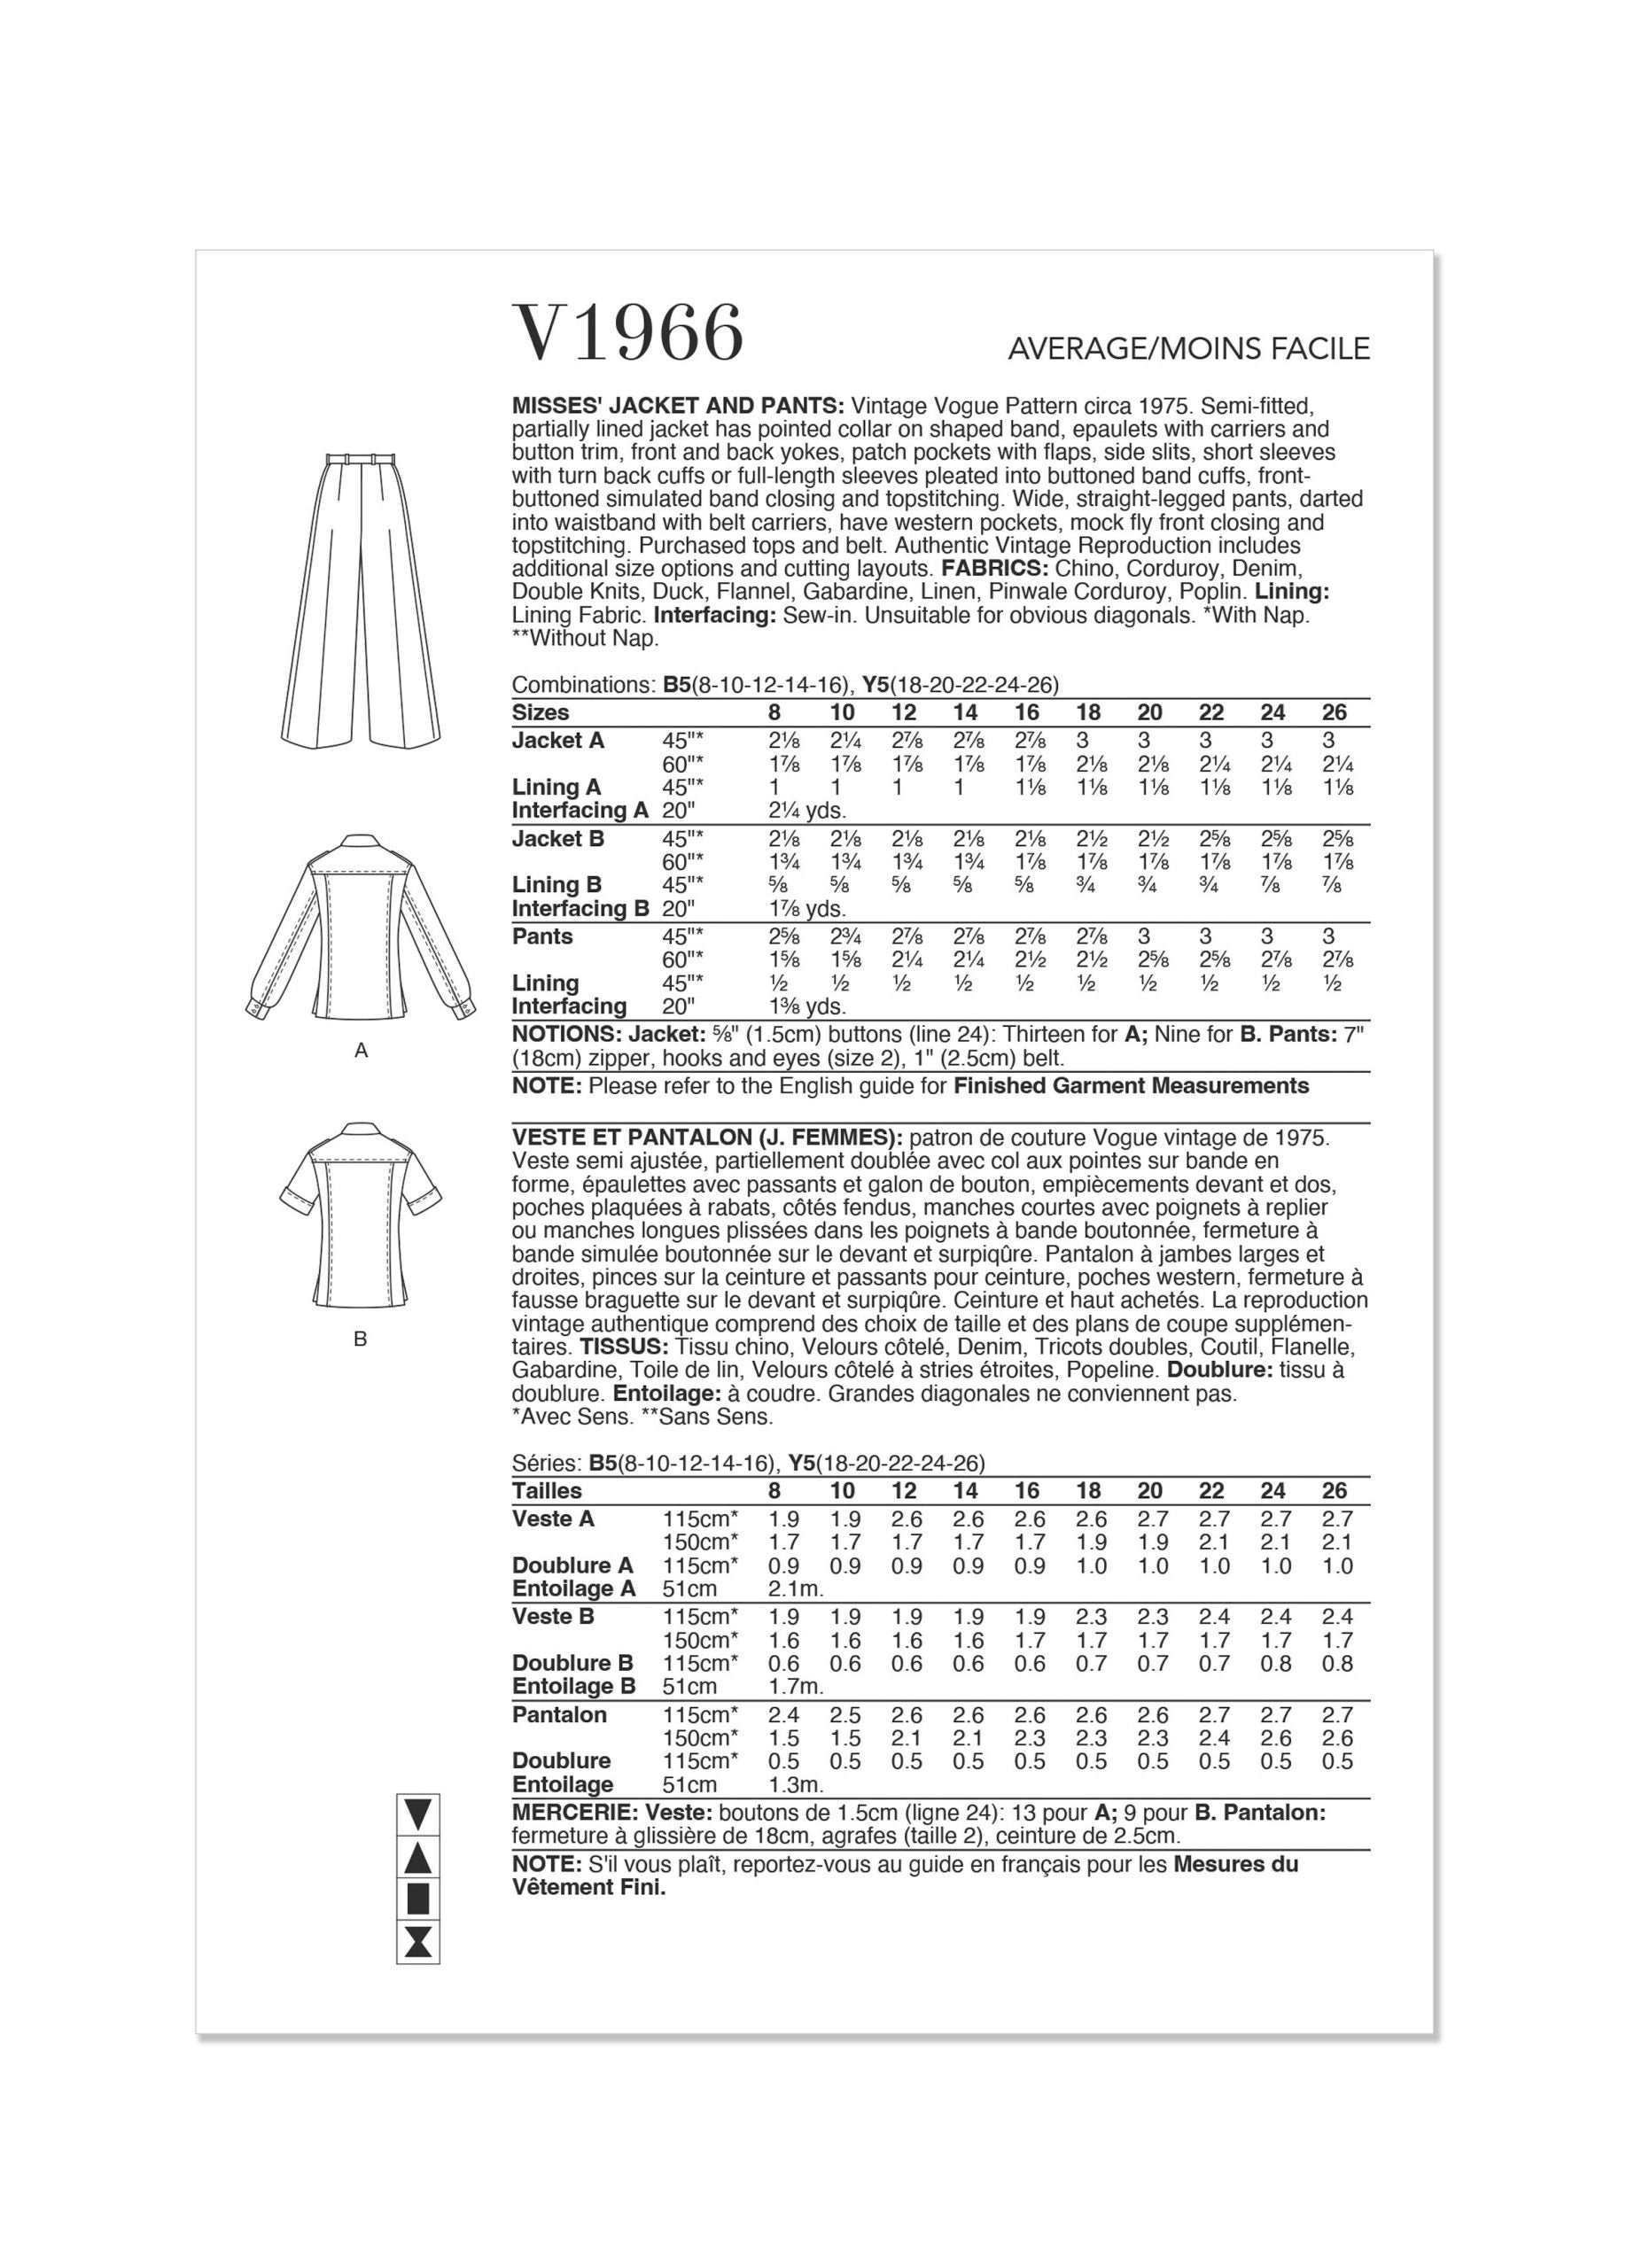 Vogue Vintage Jacket & Trousers V1966